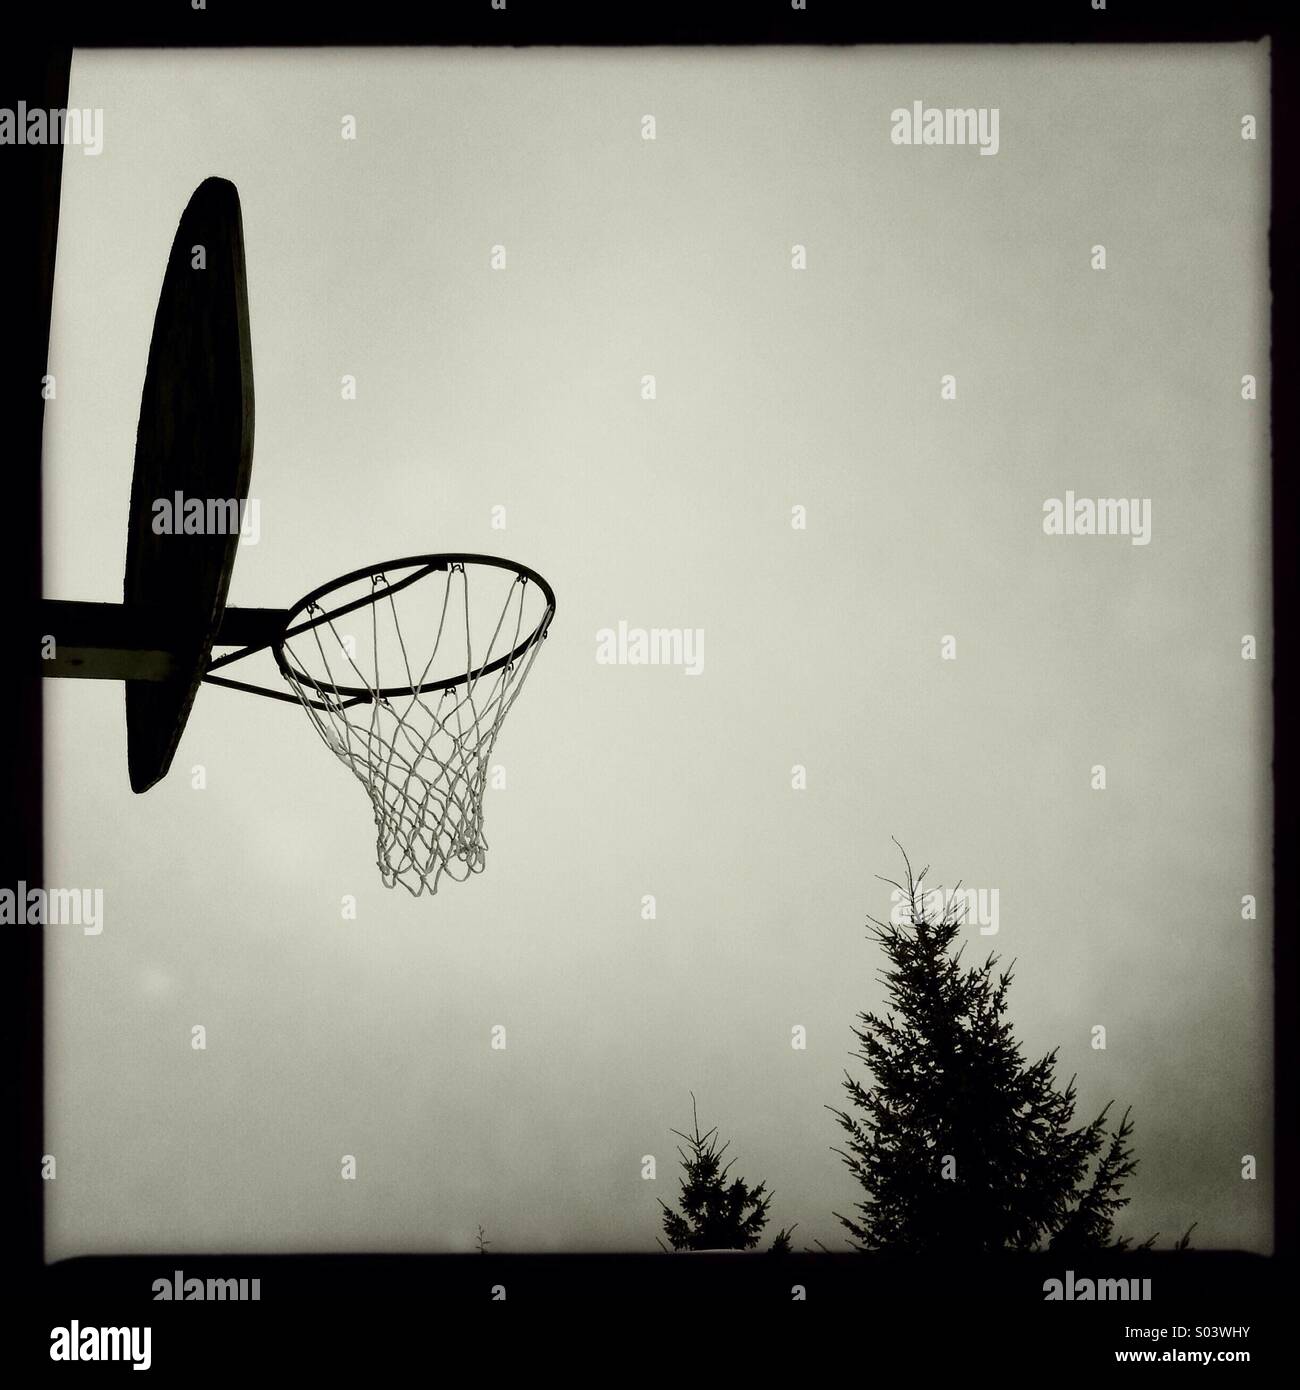 Schwarz/weiß der Basketballkorb als silhouette Stockfotografie - Alamy